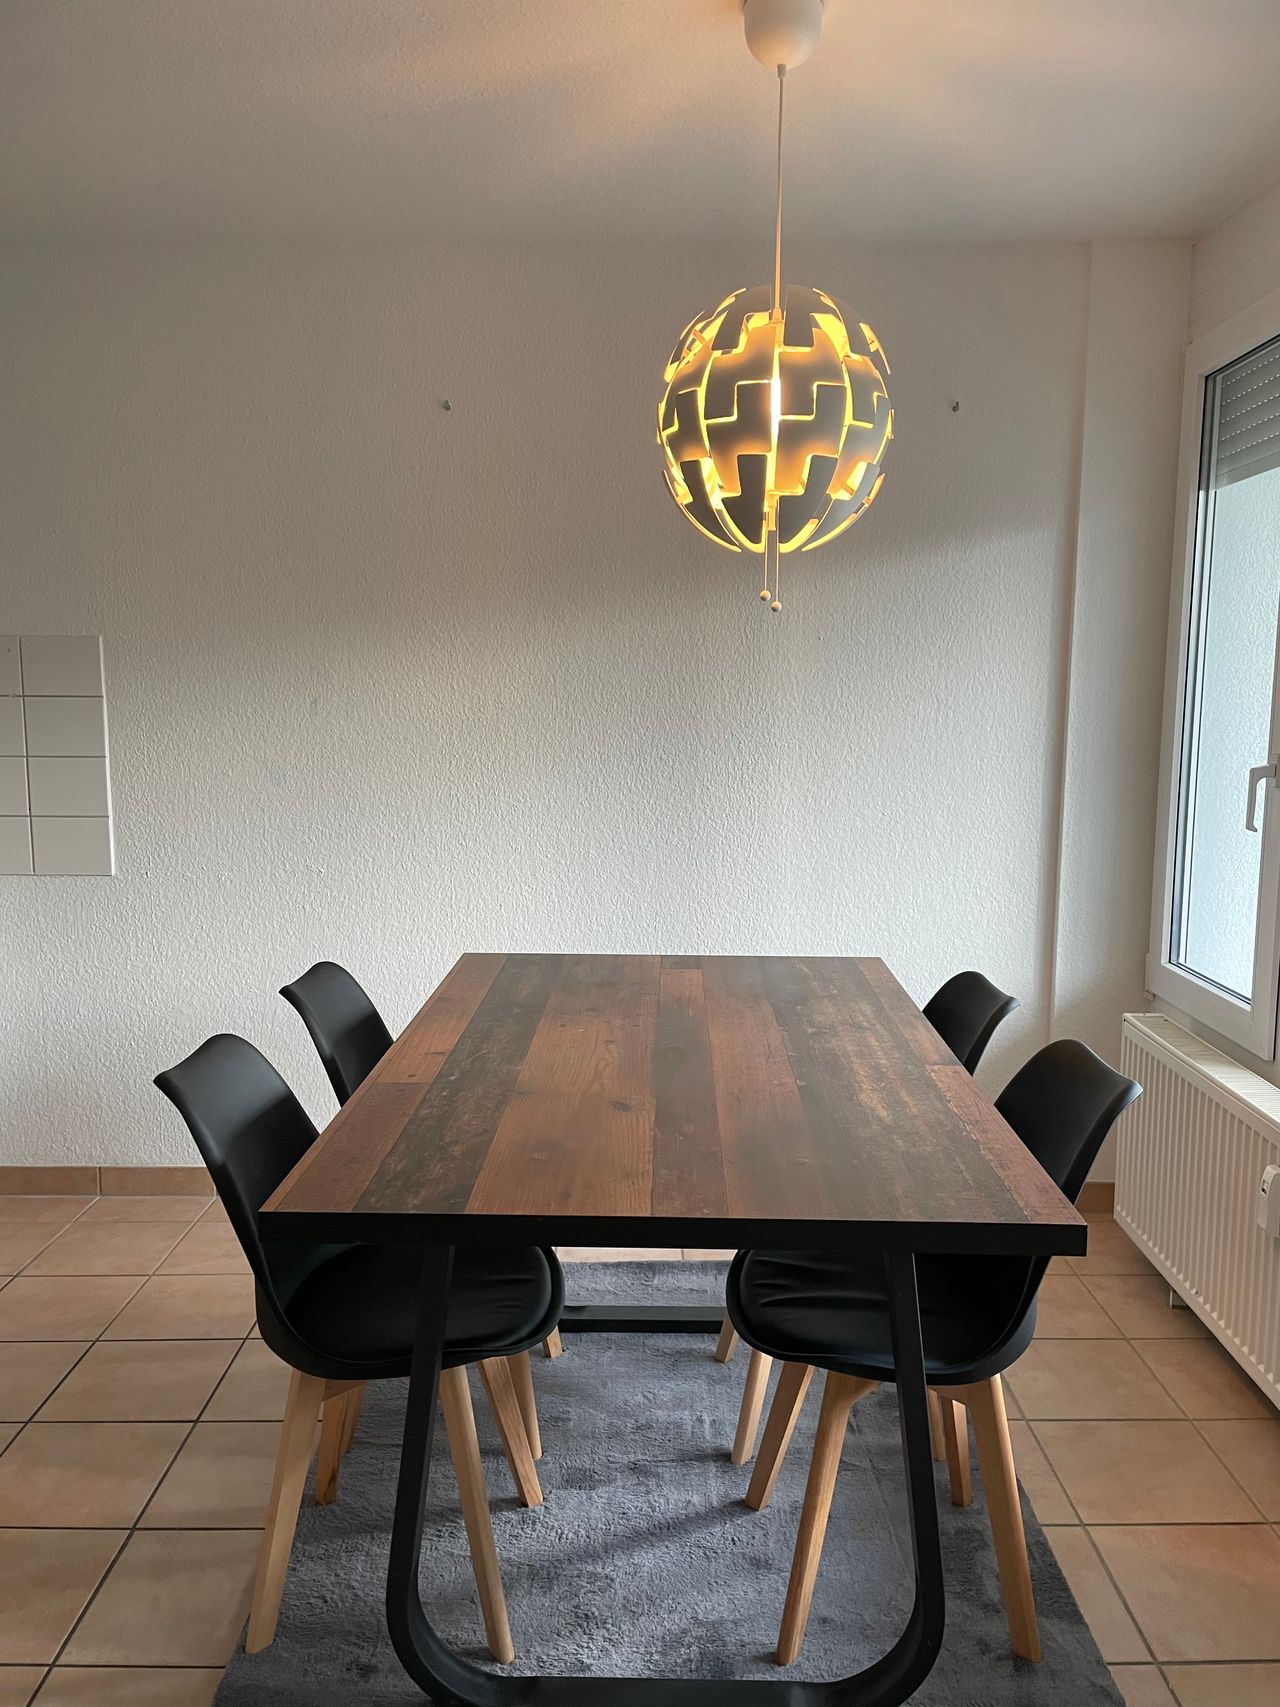 Newly furnished flat in Wieblingen